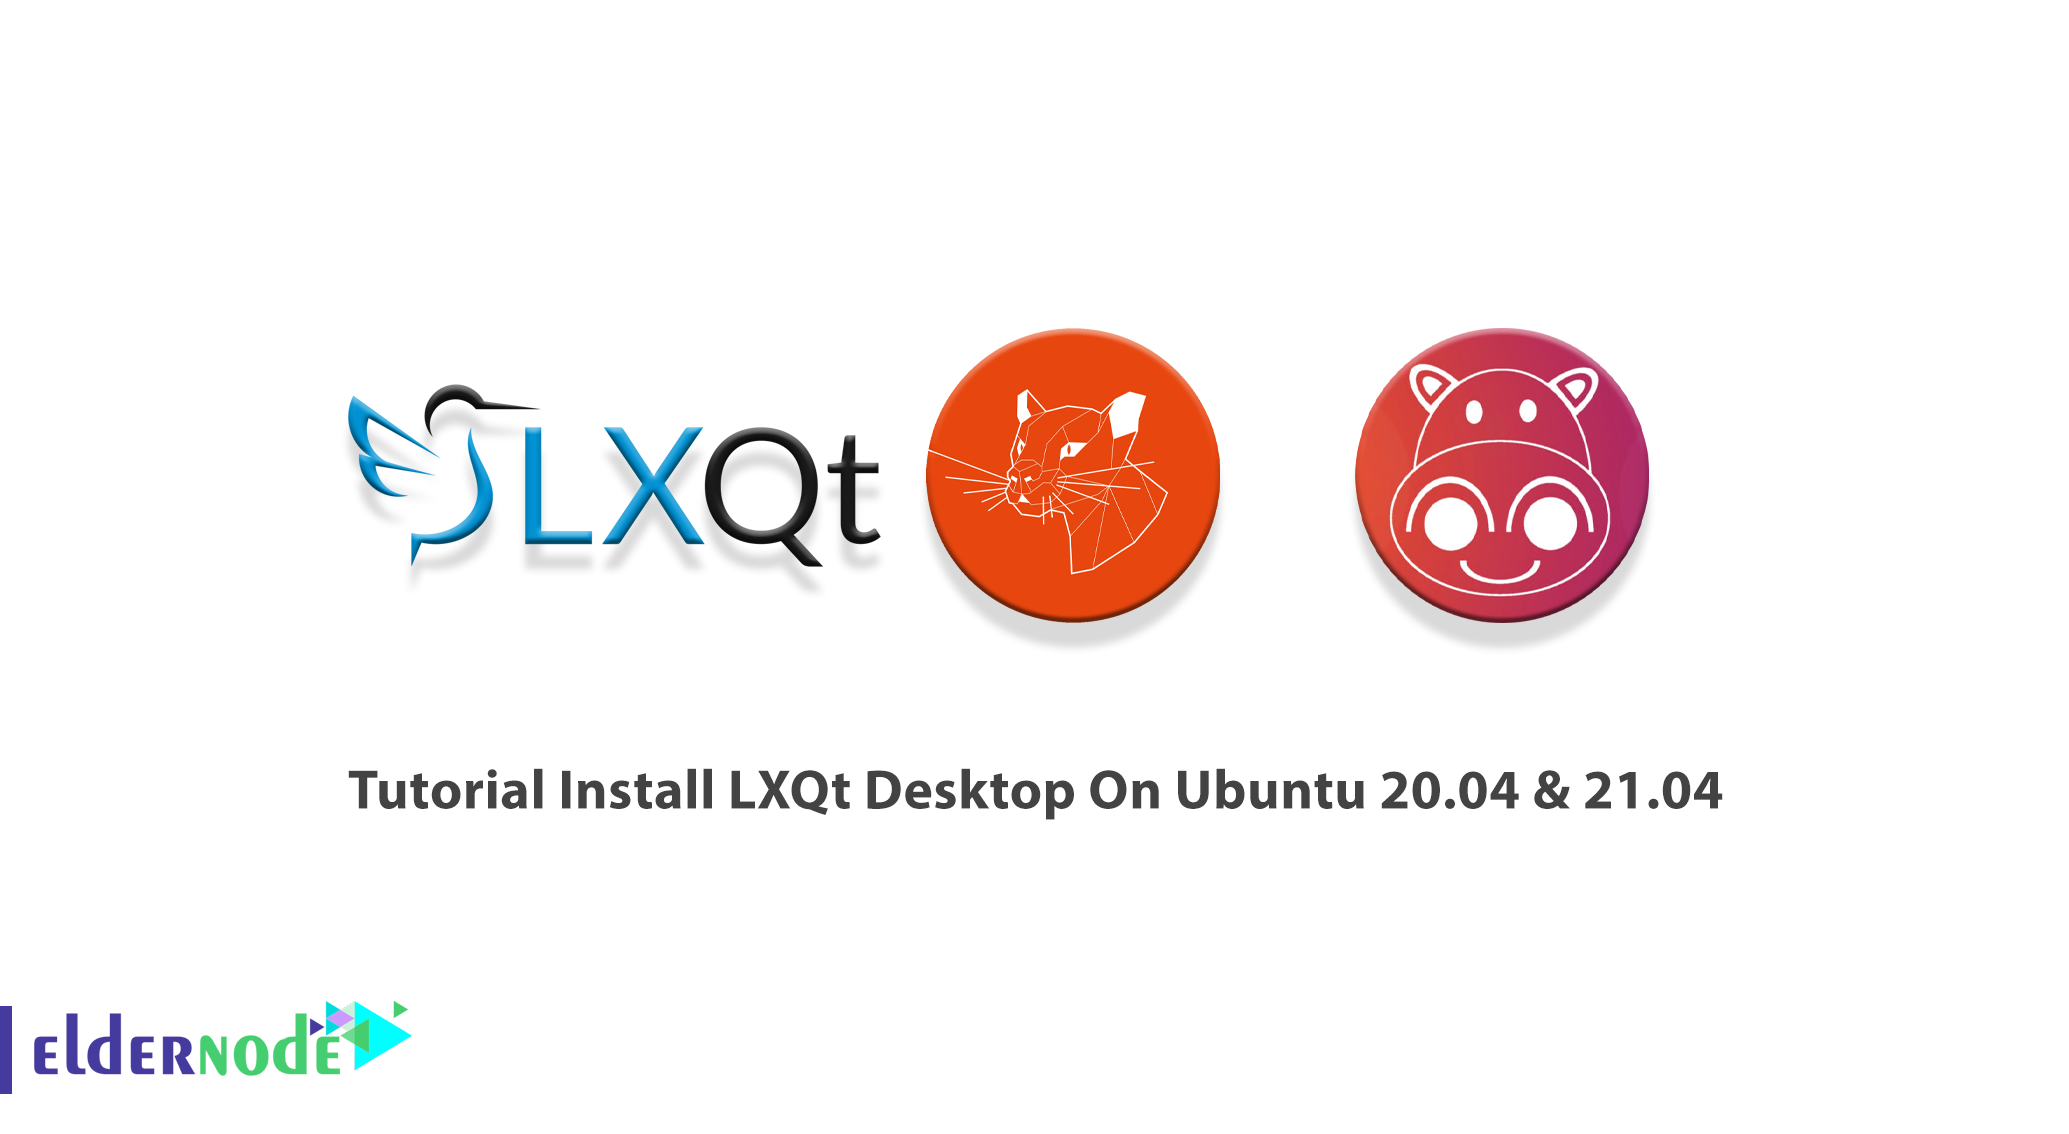 remote desktop for ubuntu server lubuntu